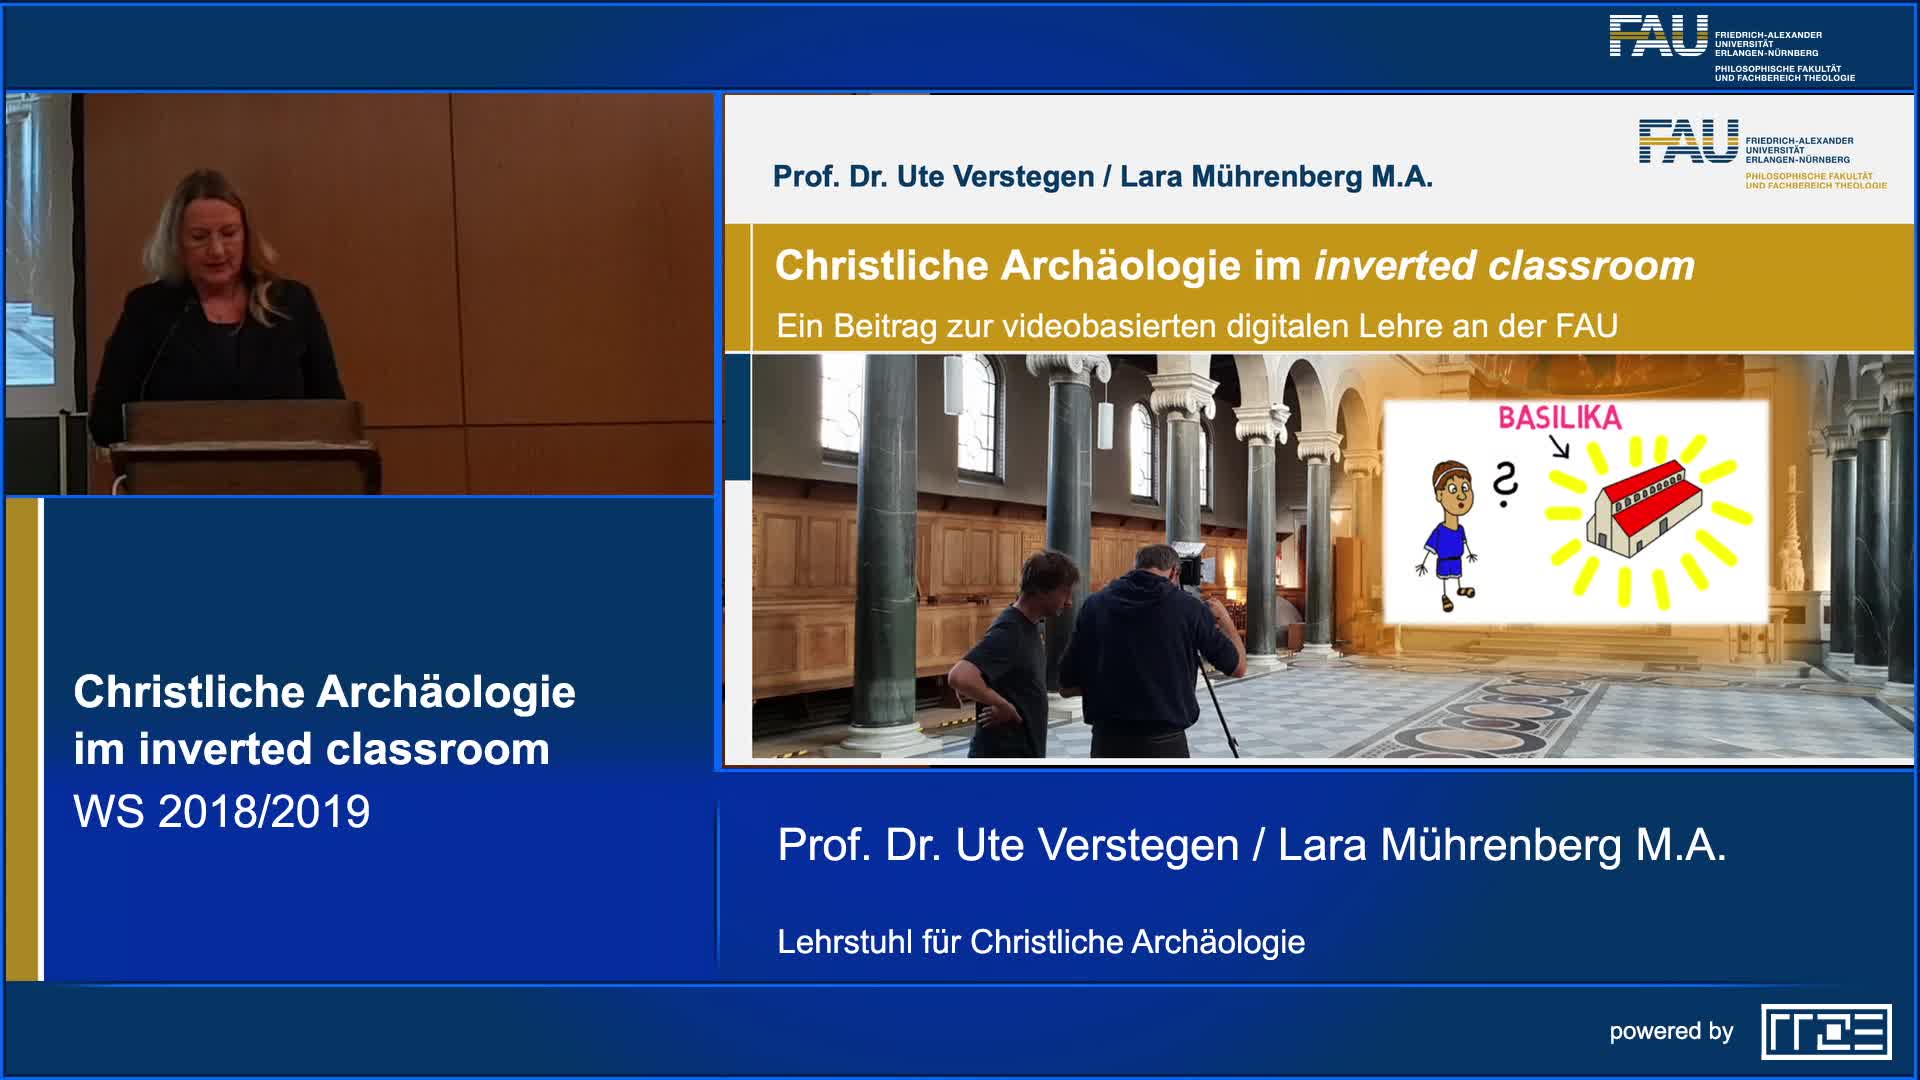 Christliche Archäologie im inverted classroom. Ein Projekt zur videobasierten digitalen Lehre an der FAU preview image